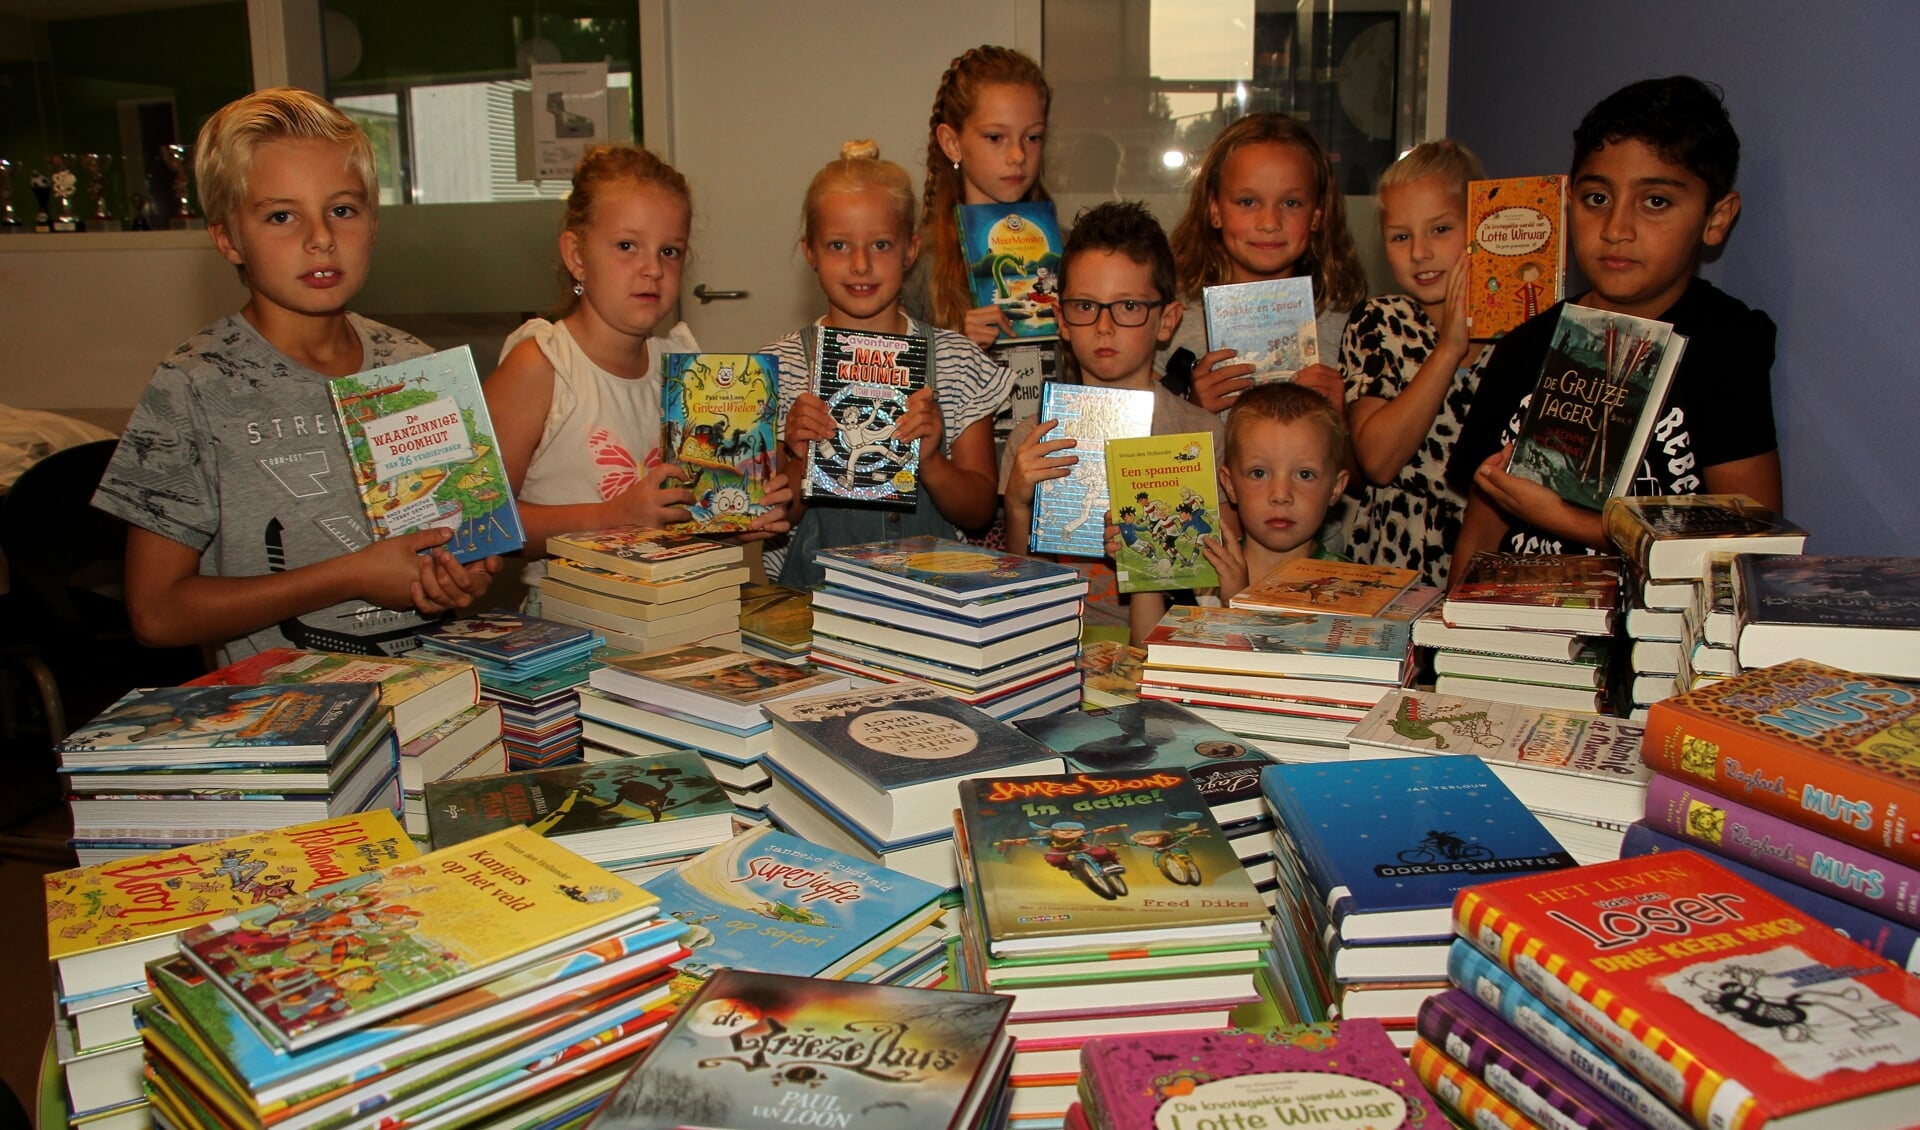 Bonne, Julijn, Sarah, Maud, Nick, Thijs, Jasmijn, Nina en Ghabriël kijken naar de stapels boeken. Foto: Liesbeth Spaansen